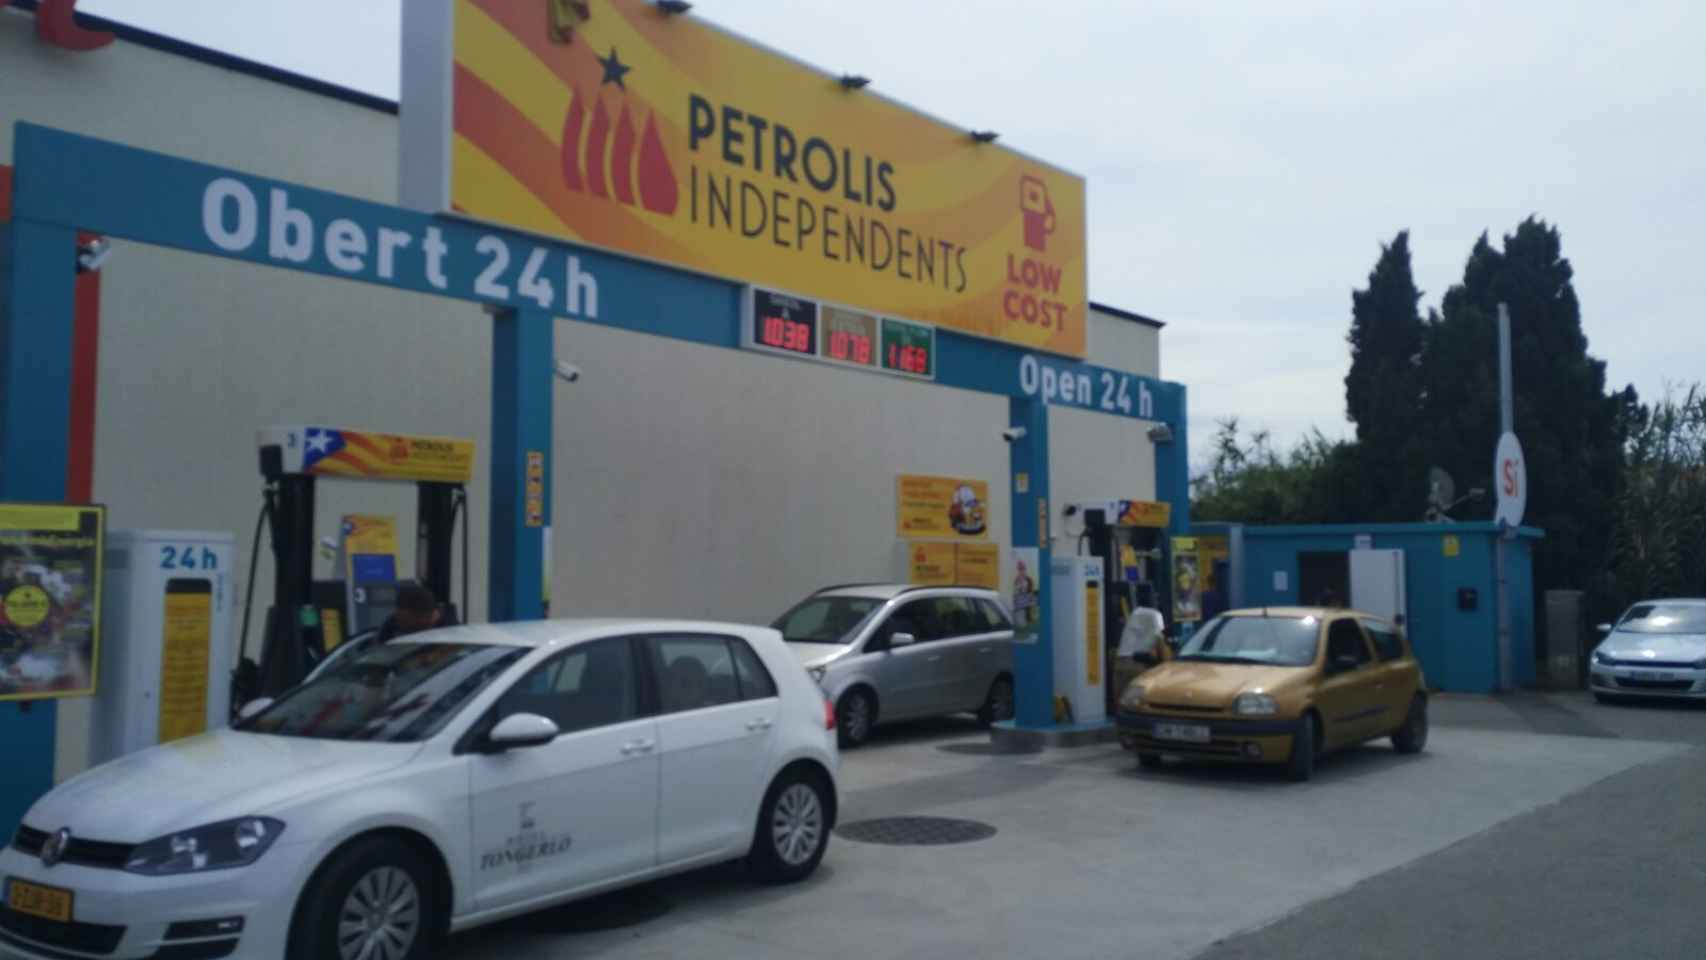 Una de las gasolineras de Petrolis Independents, abierta junto a un centro comercial.